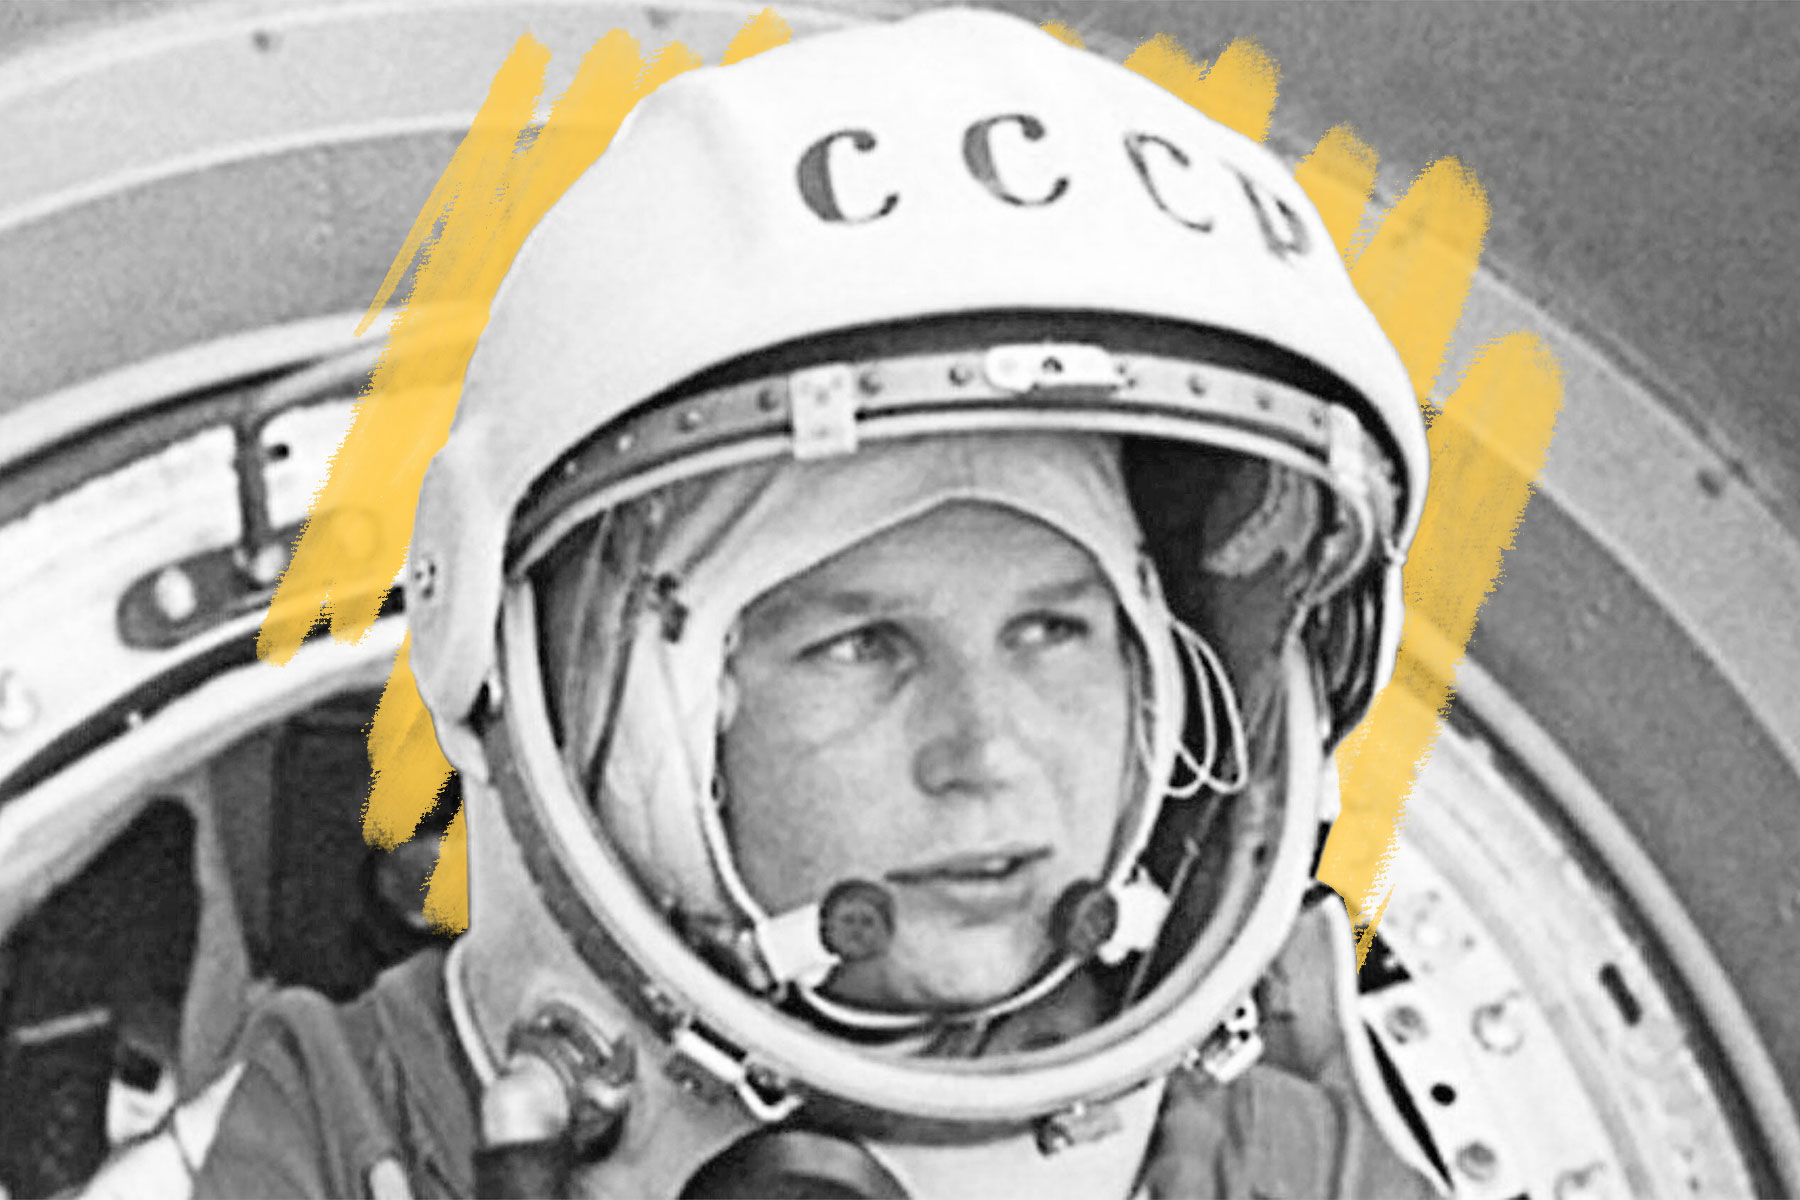 Tereshkova in space